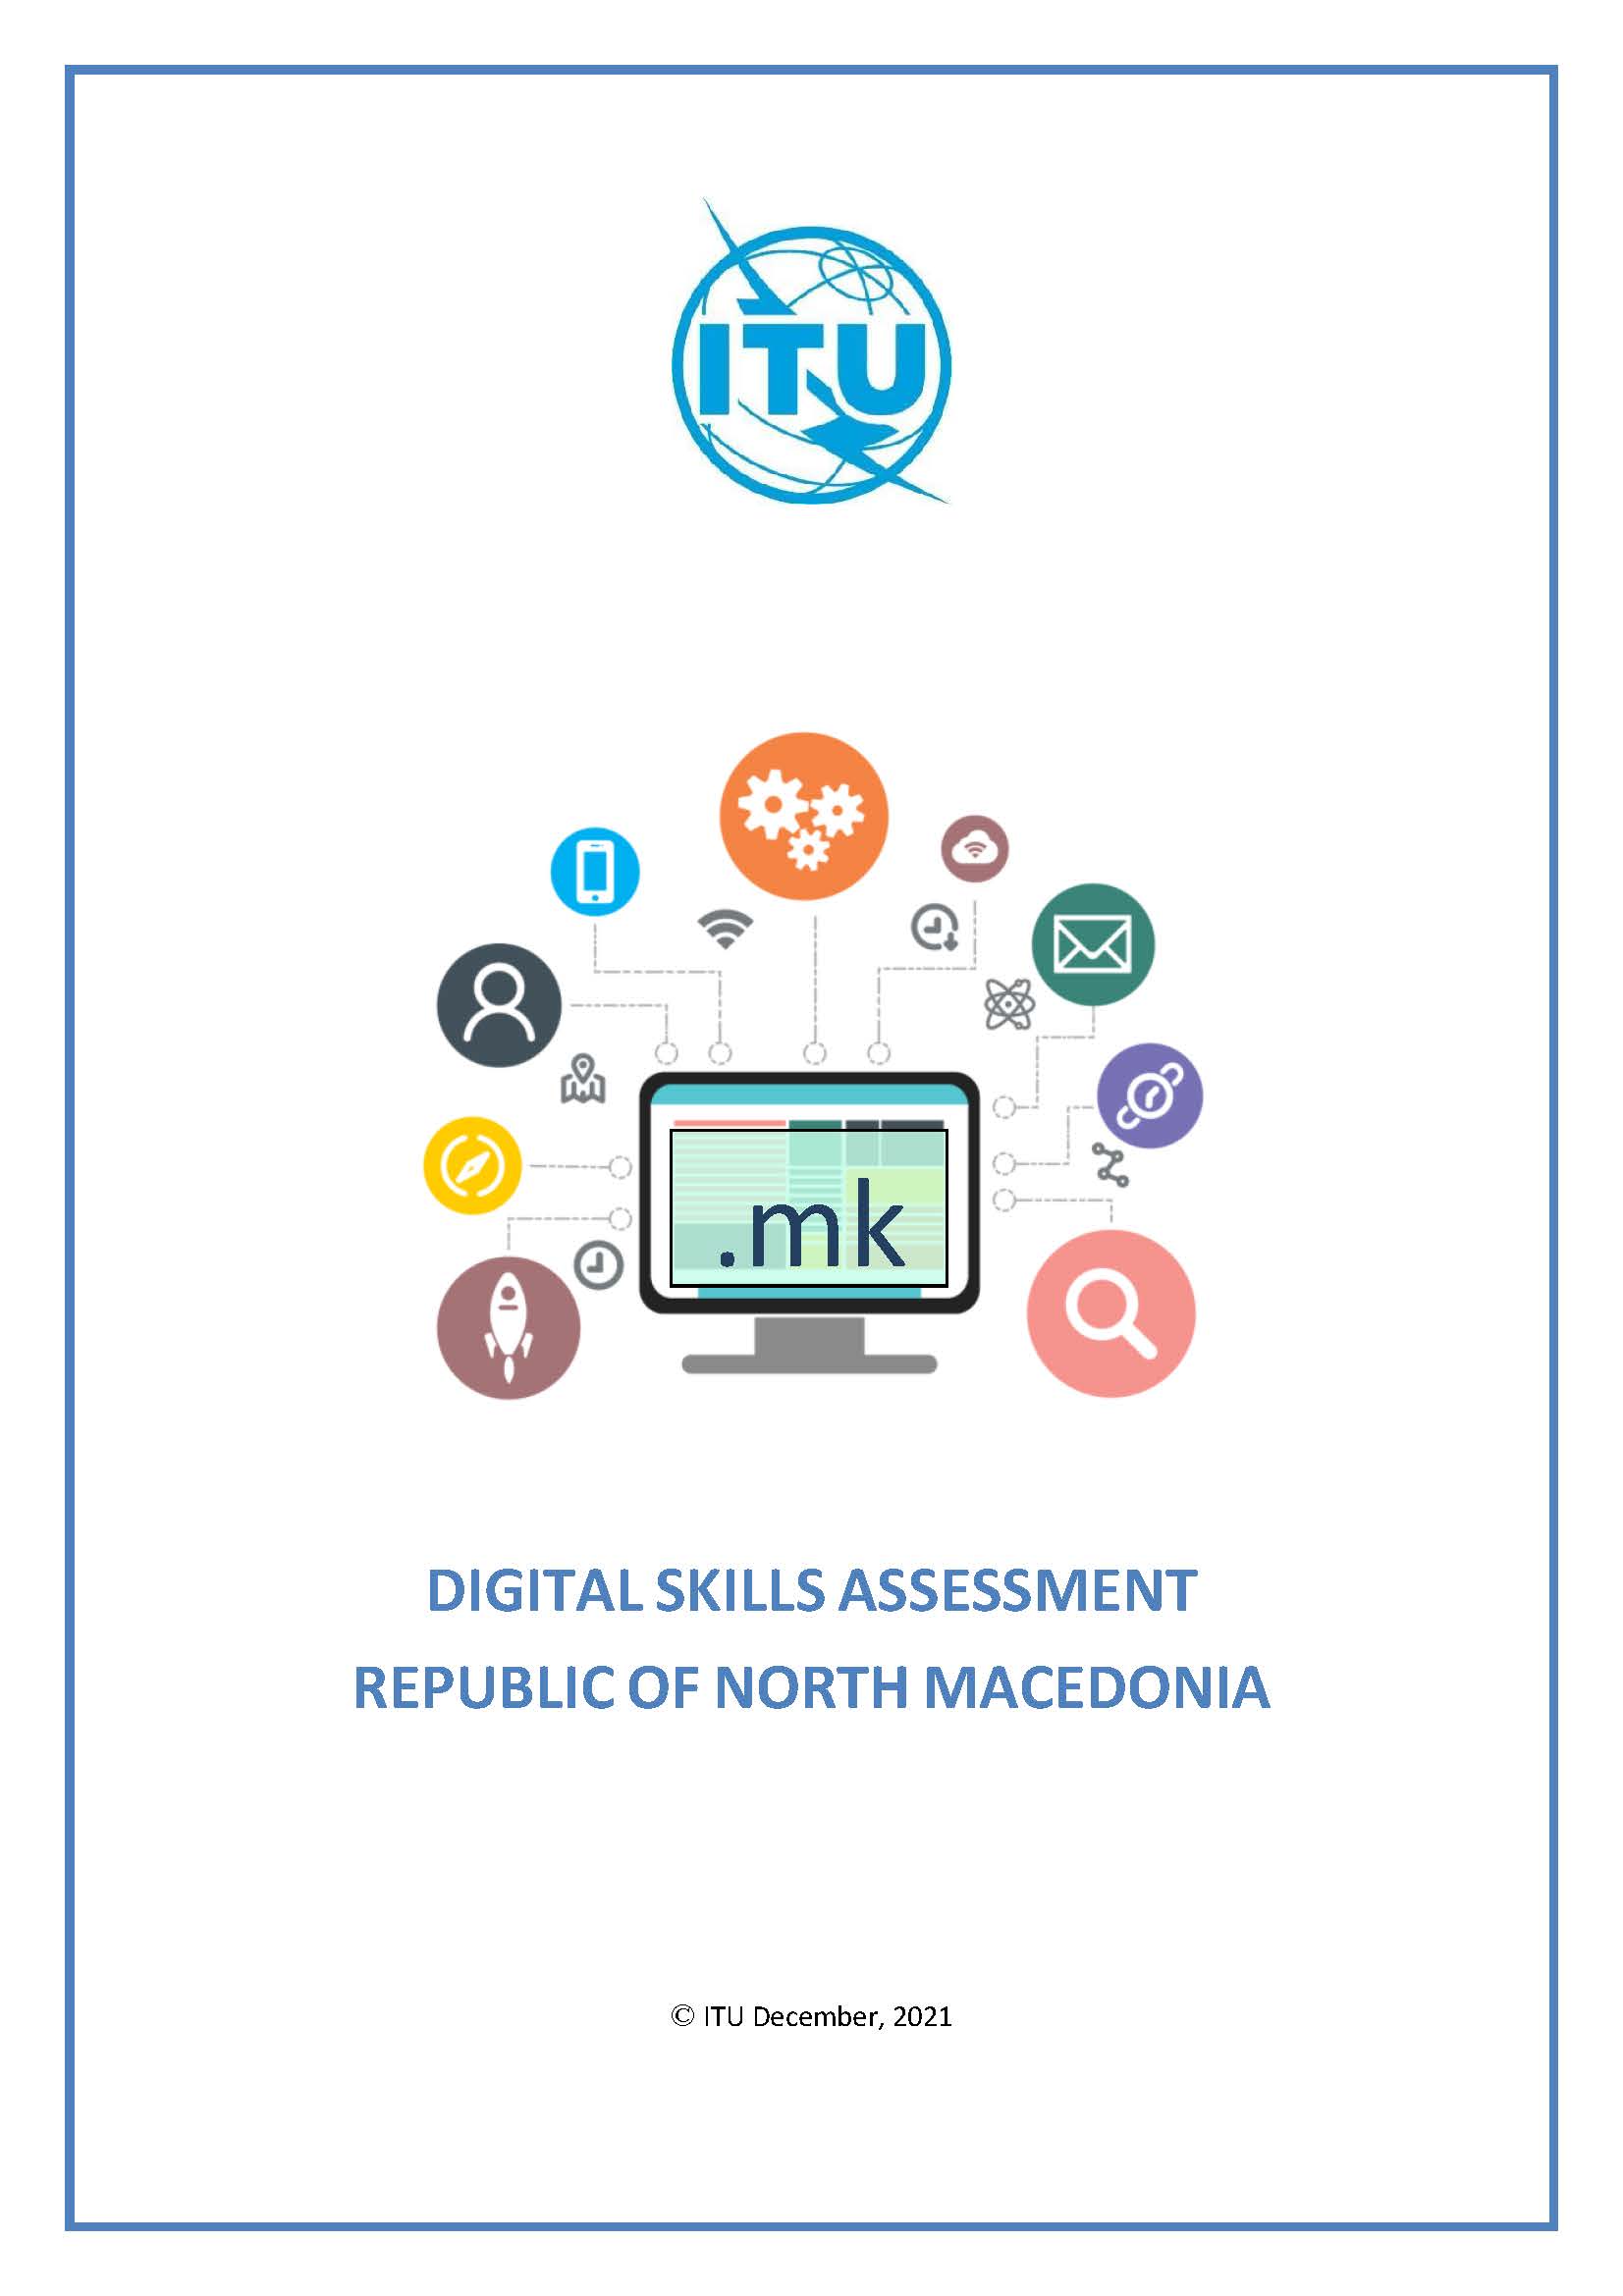 ITU Report on Digital Skills Assessment in North Macedonia